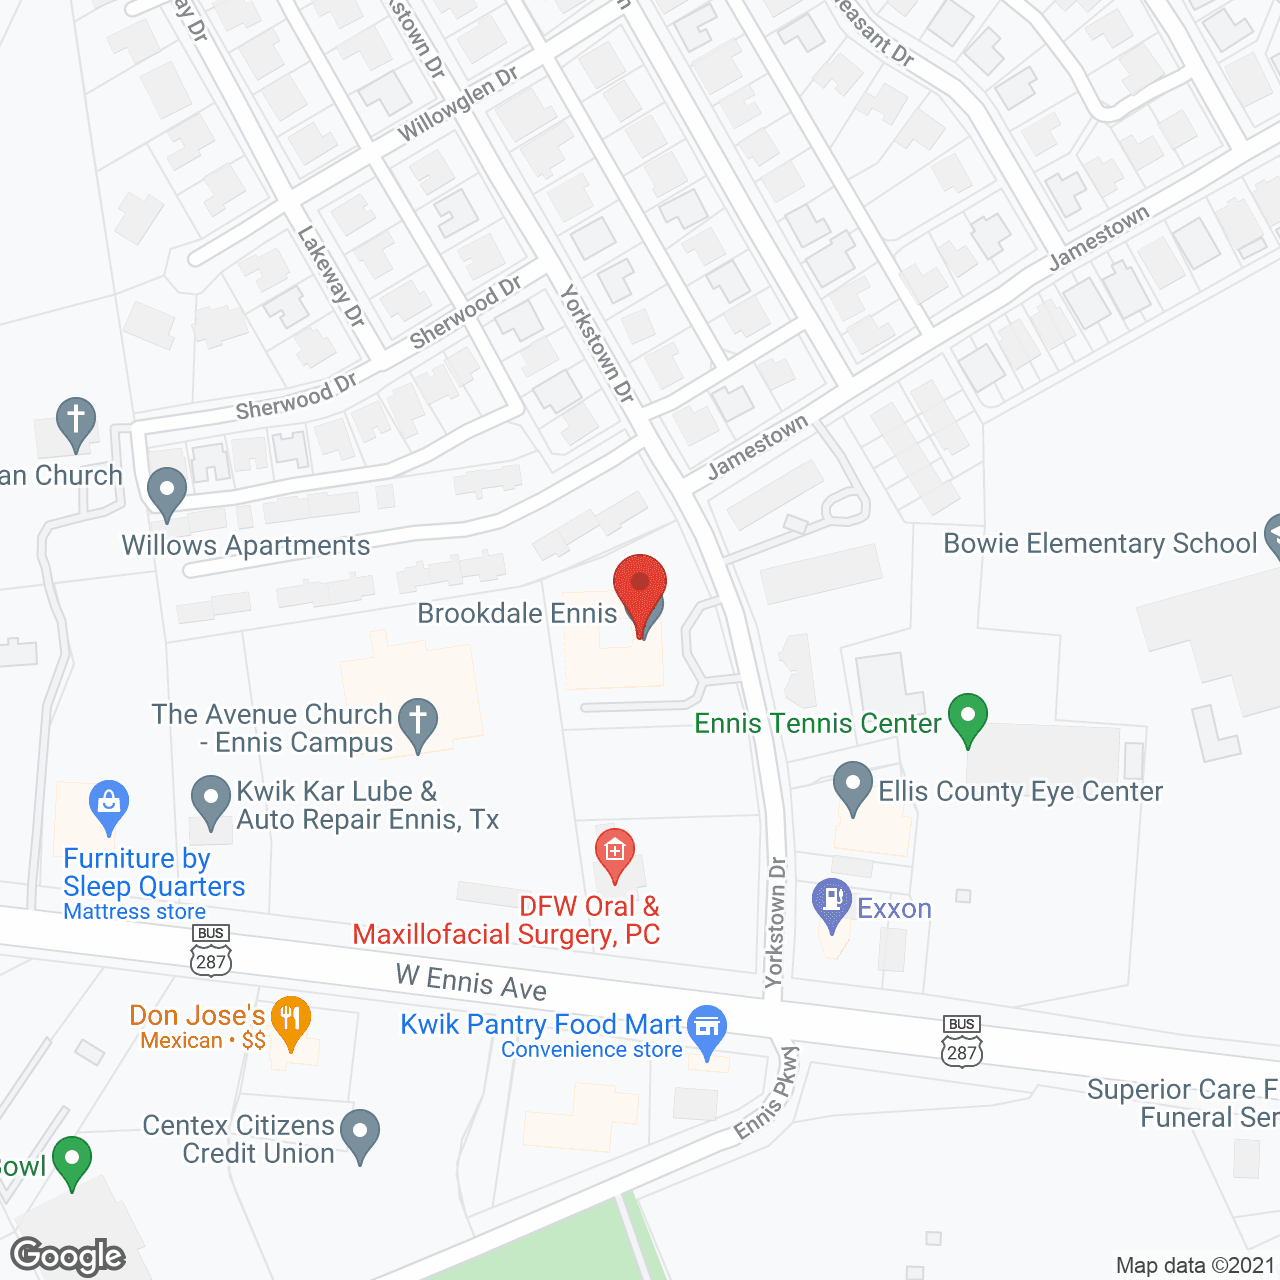 Brookdale Ennis in google map